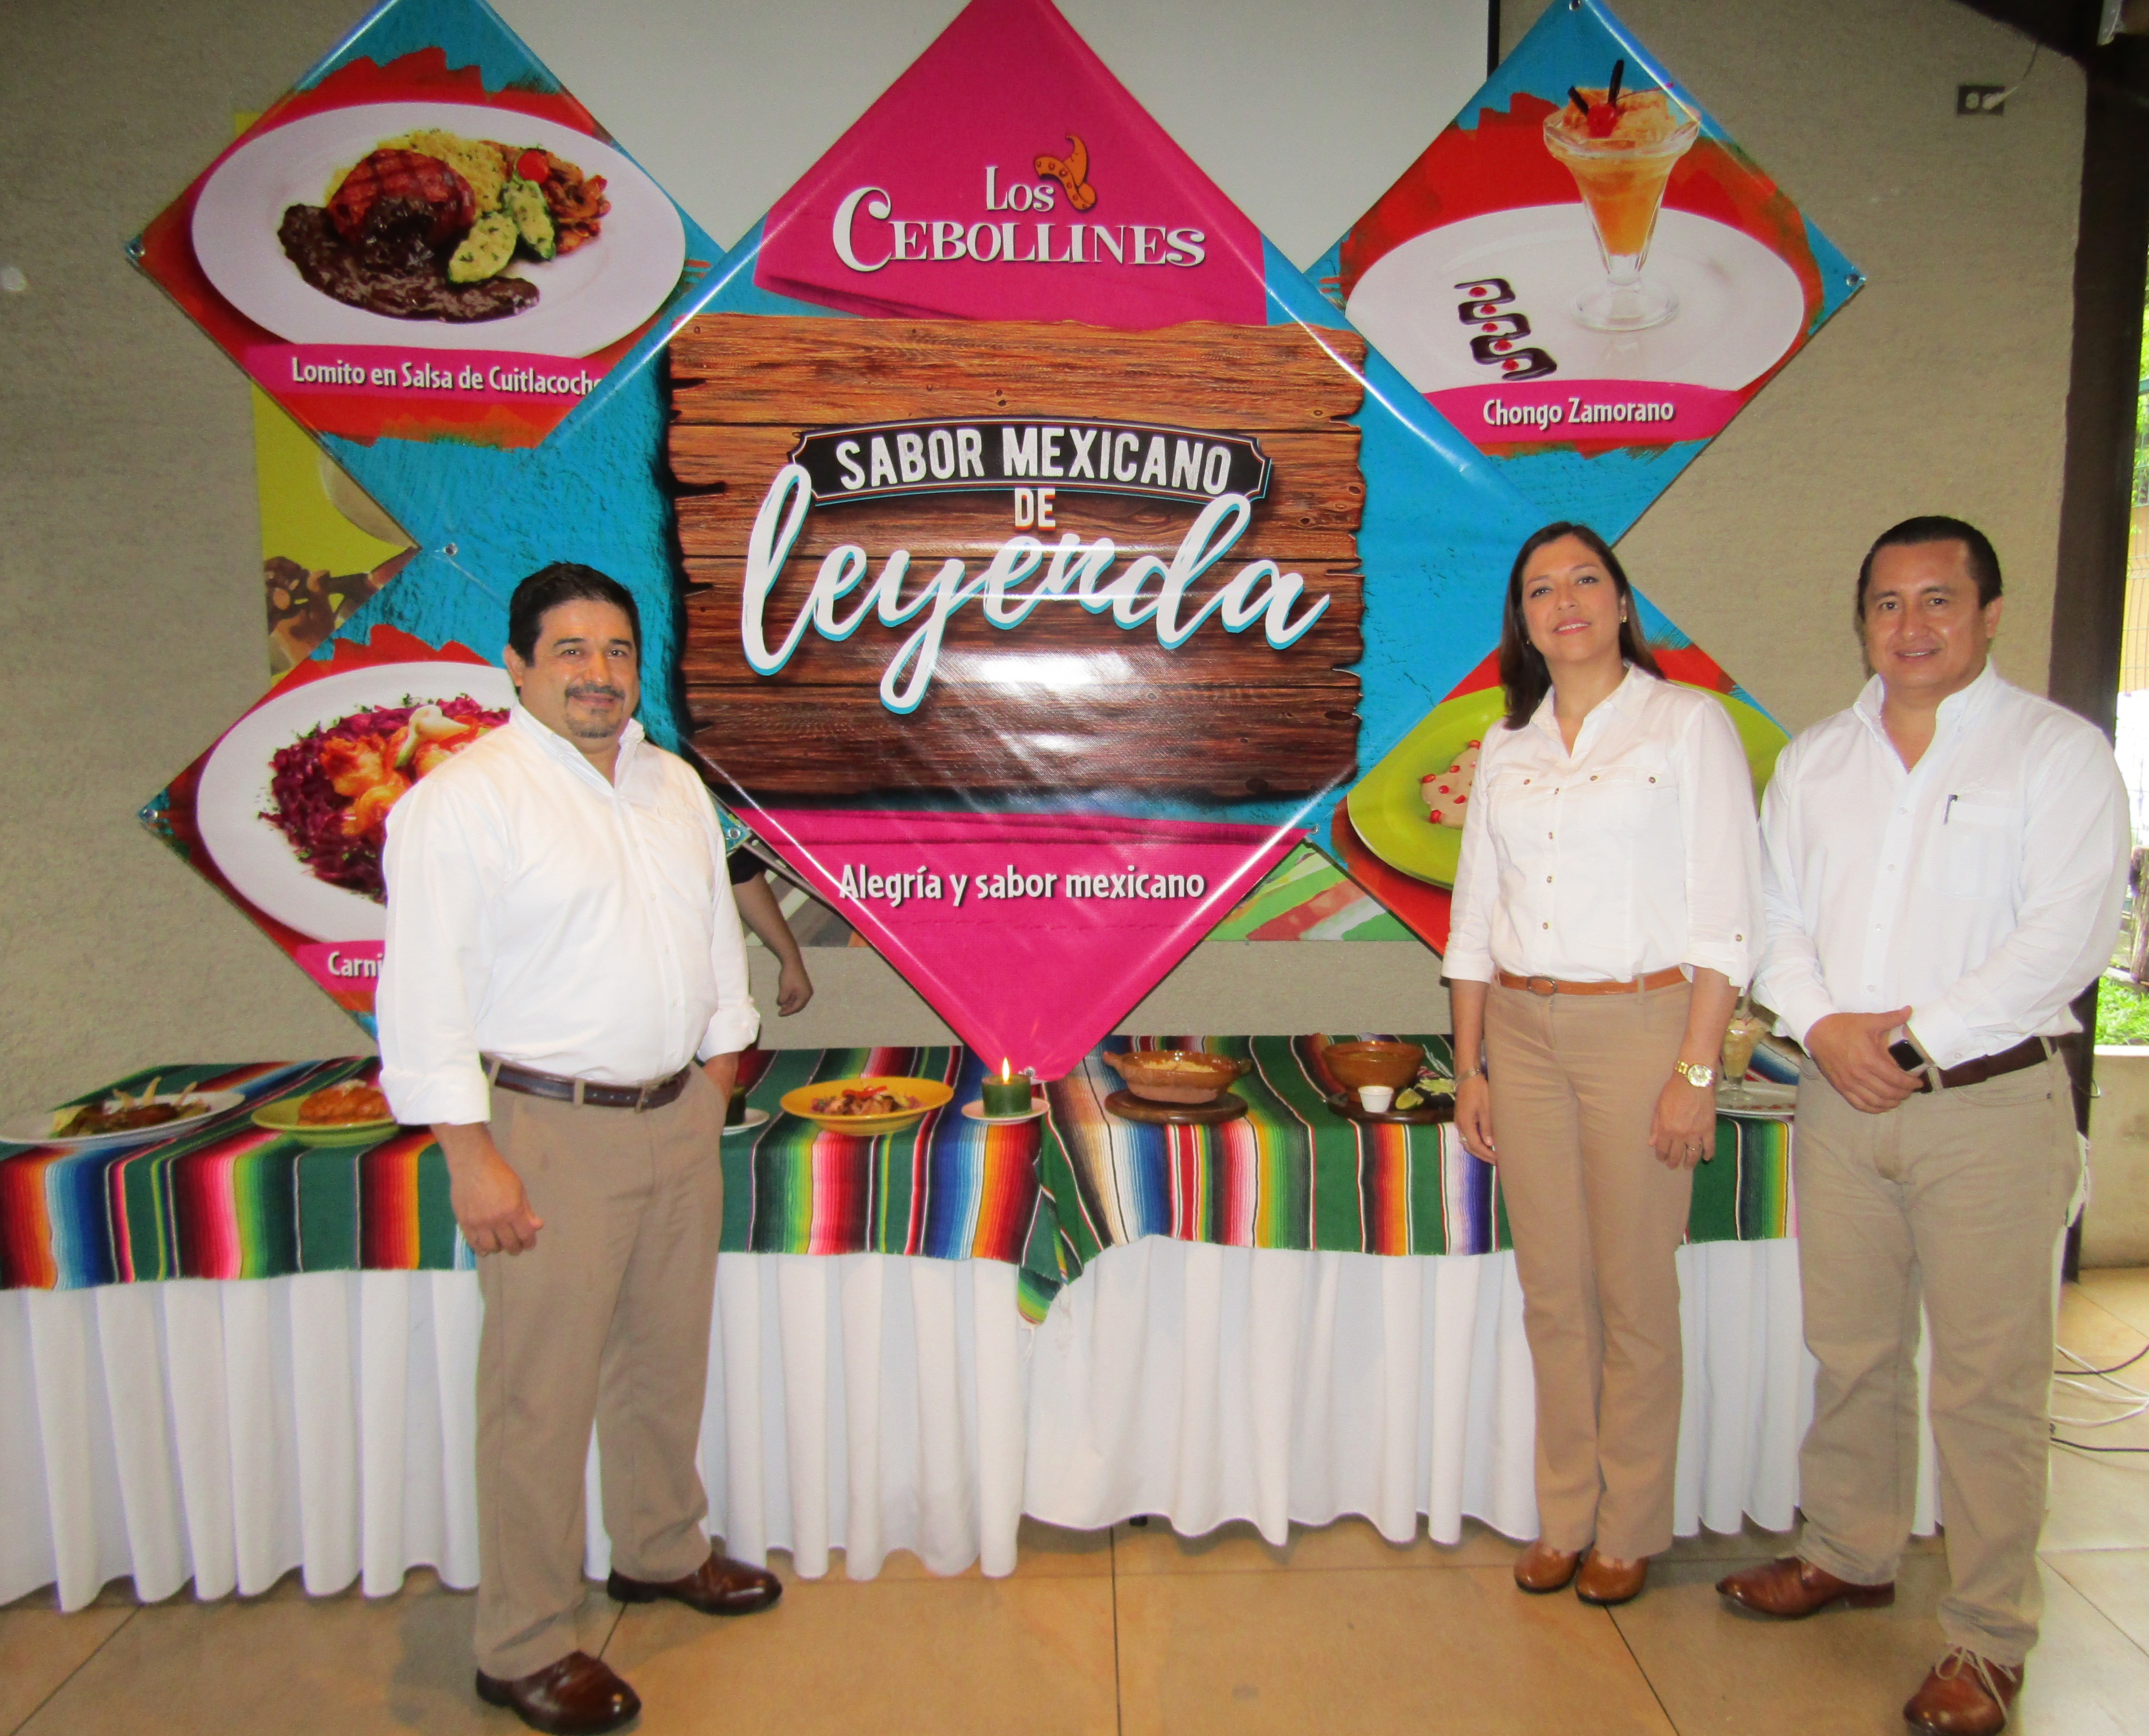 “Los Cebollines presenta el “Sabor Mexicano de Leyenda”